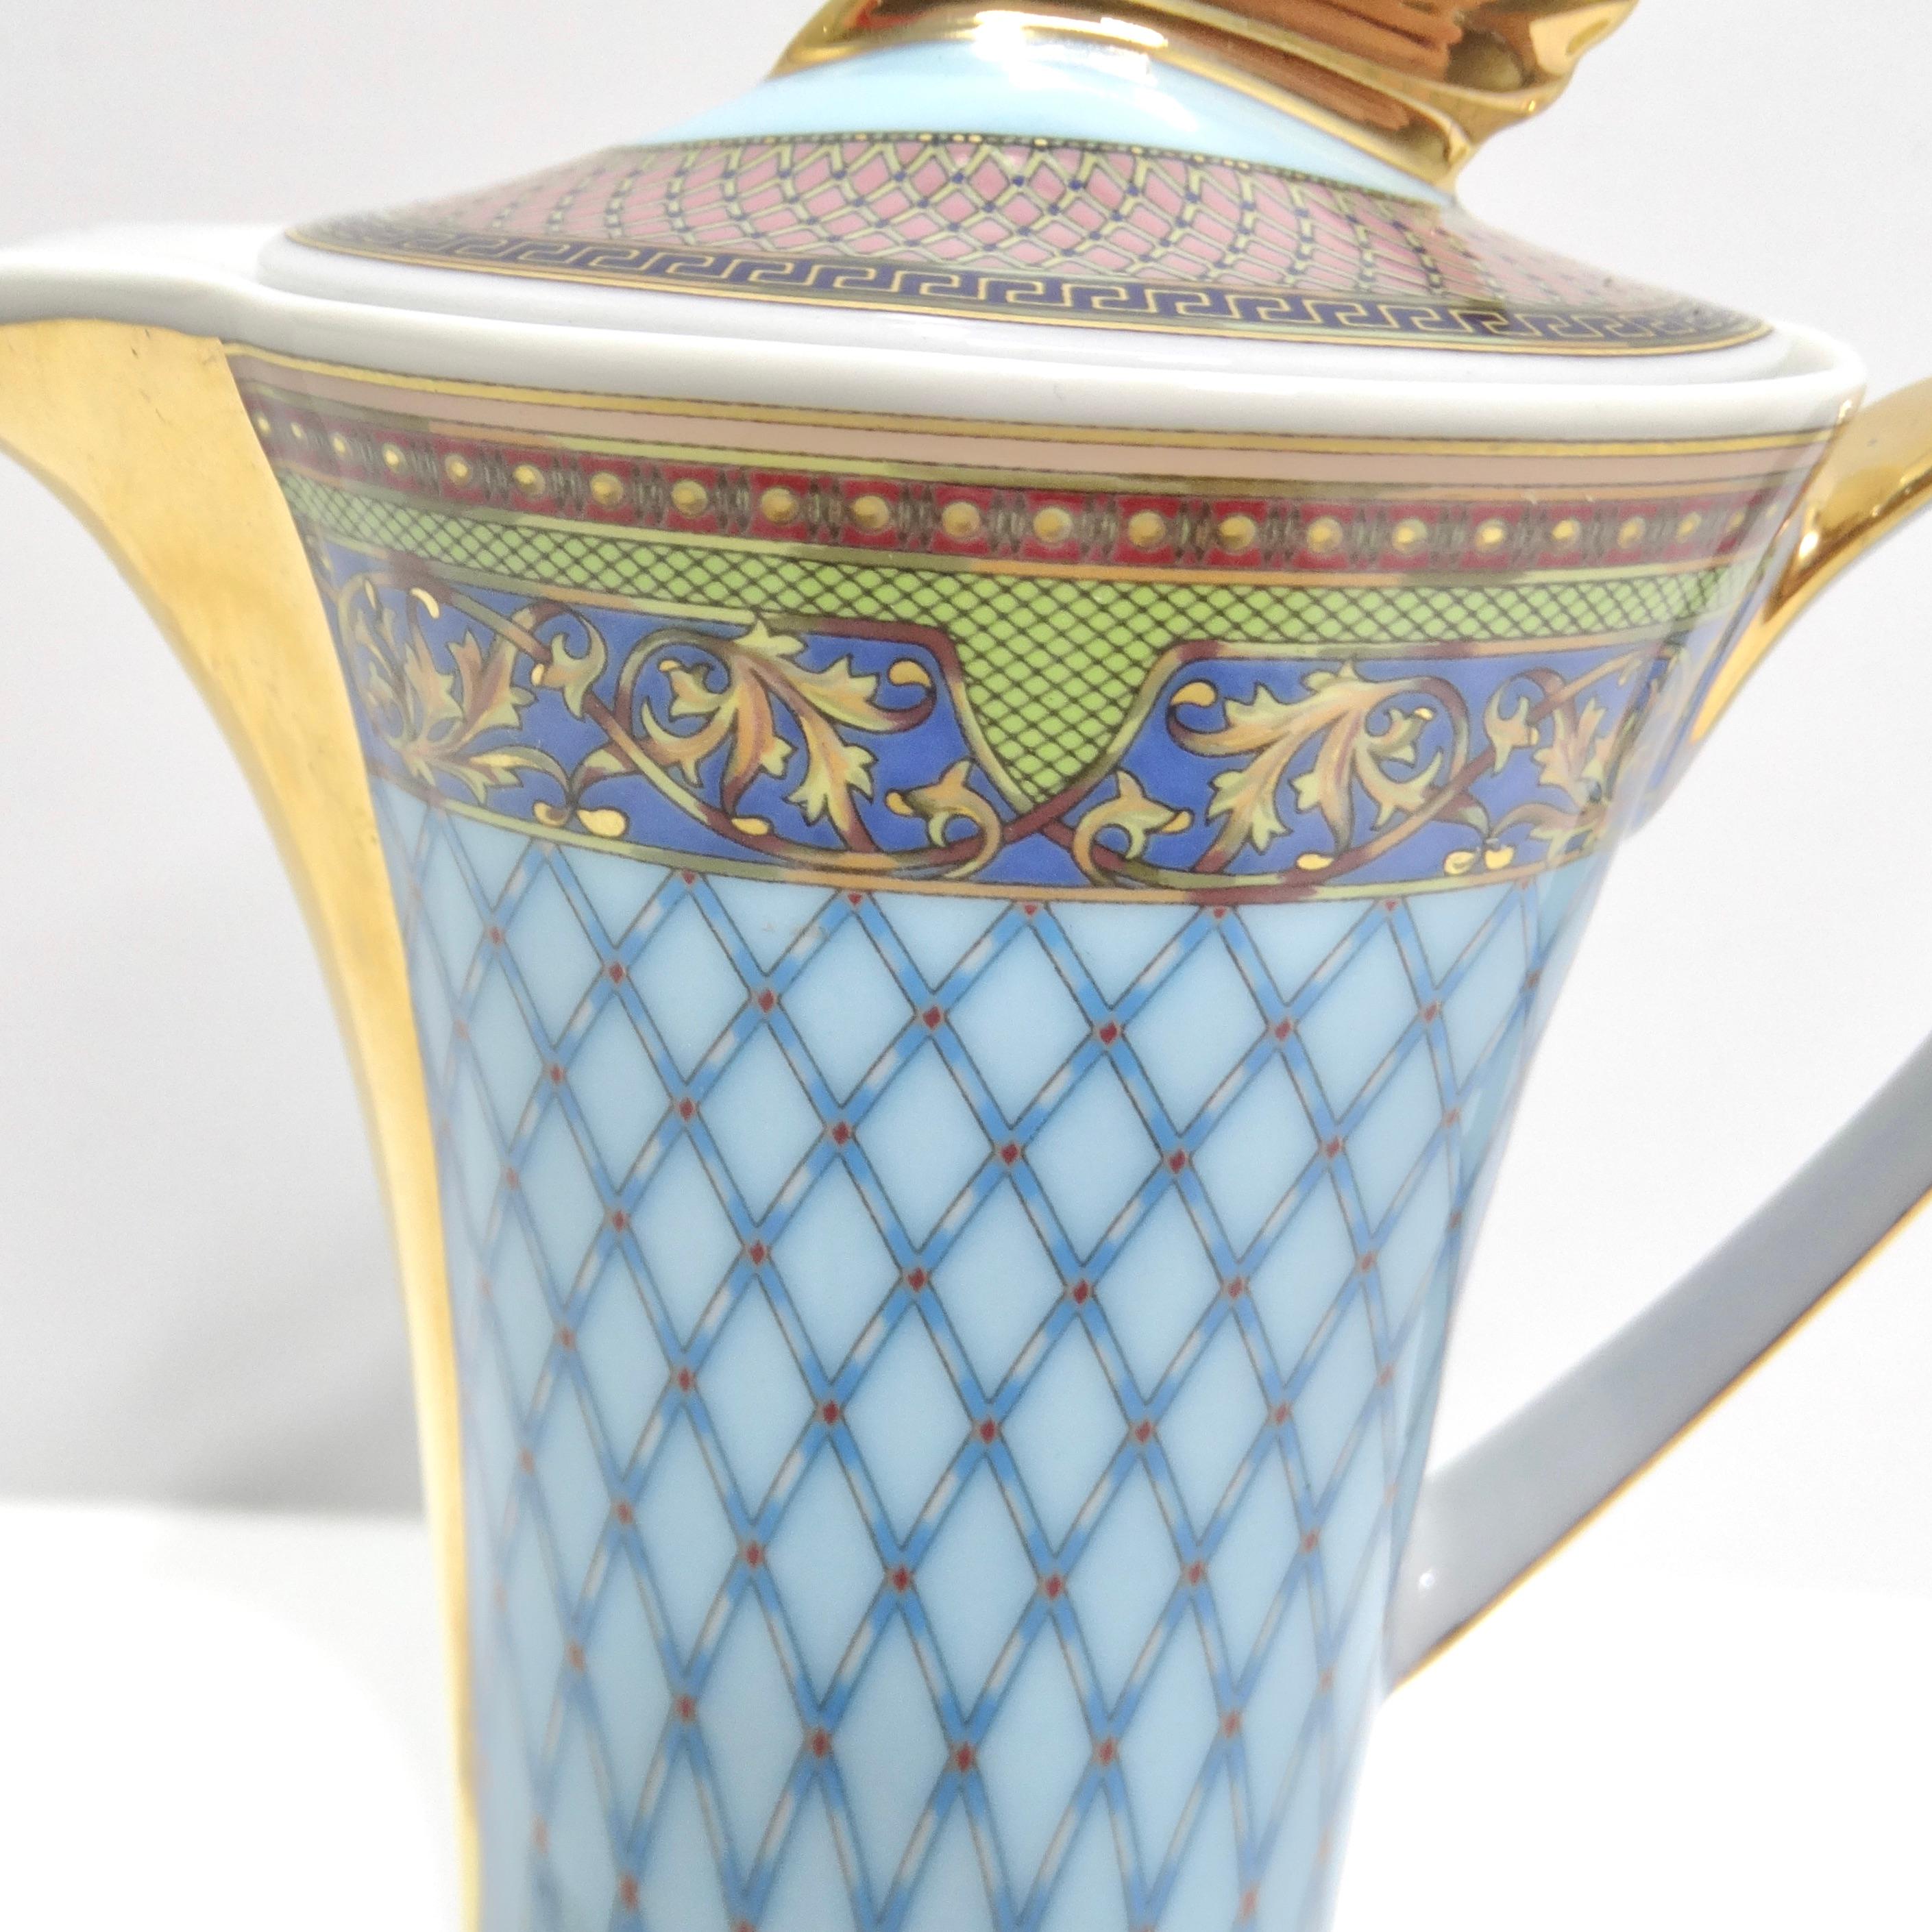 Die Rosenthal 1990er Russian Dream Kaffeekanne ist ein atemberaubendes Meisterwerk aus Porzellan, das Opulenz und Kunstfertigkeit nahtlos miteinander verbindet und einen Hauch von Luxus in Ihre Küche bringt. Mit ihrem fesselnden blauen 